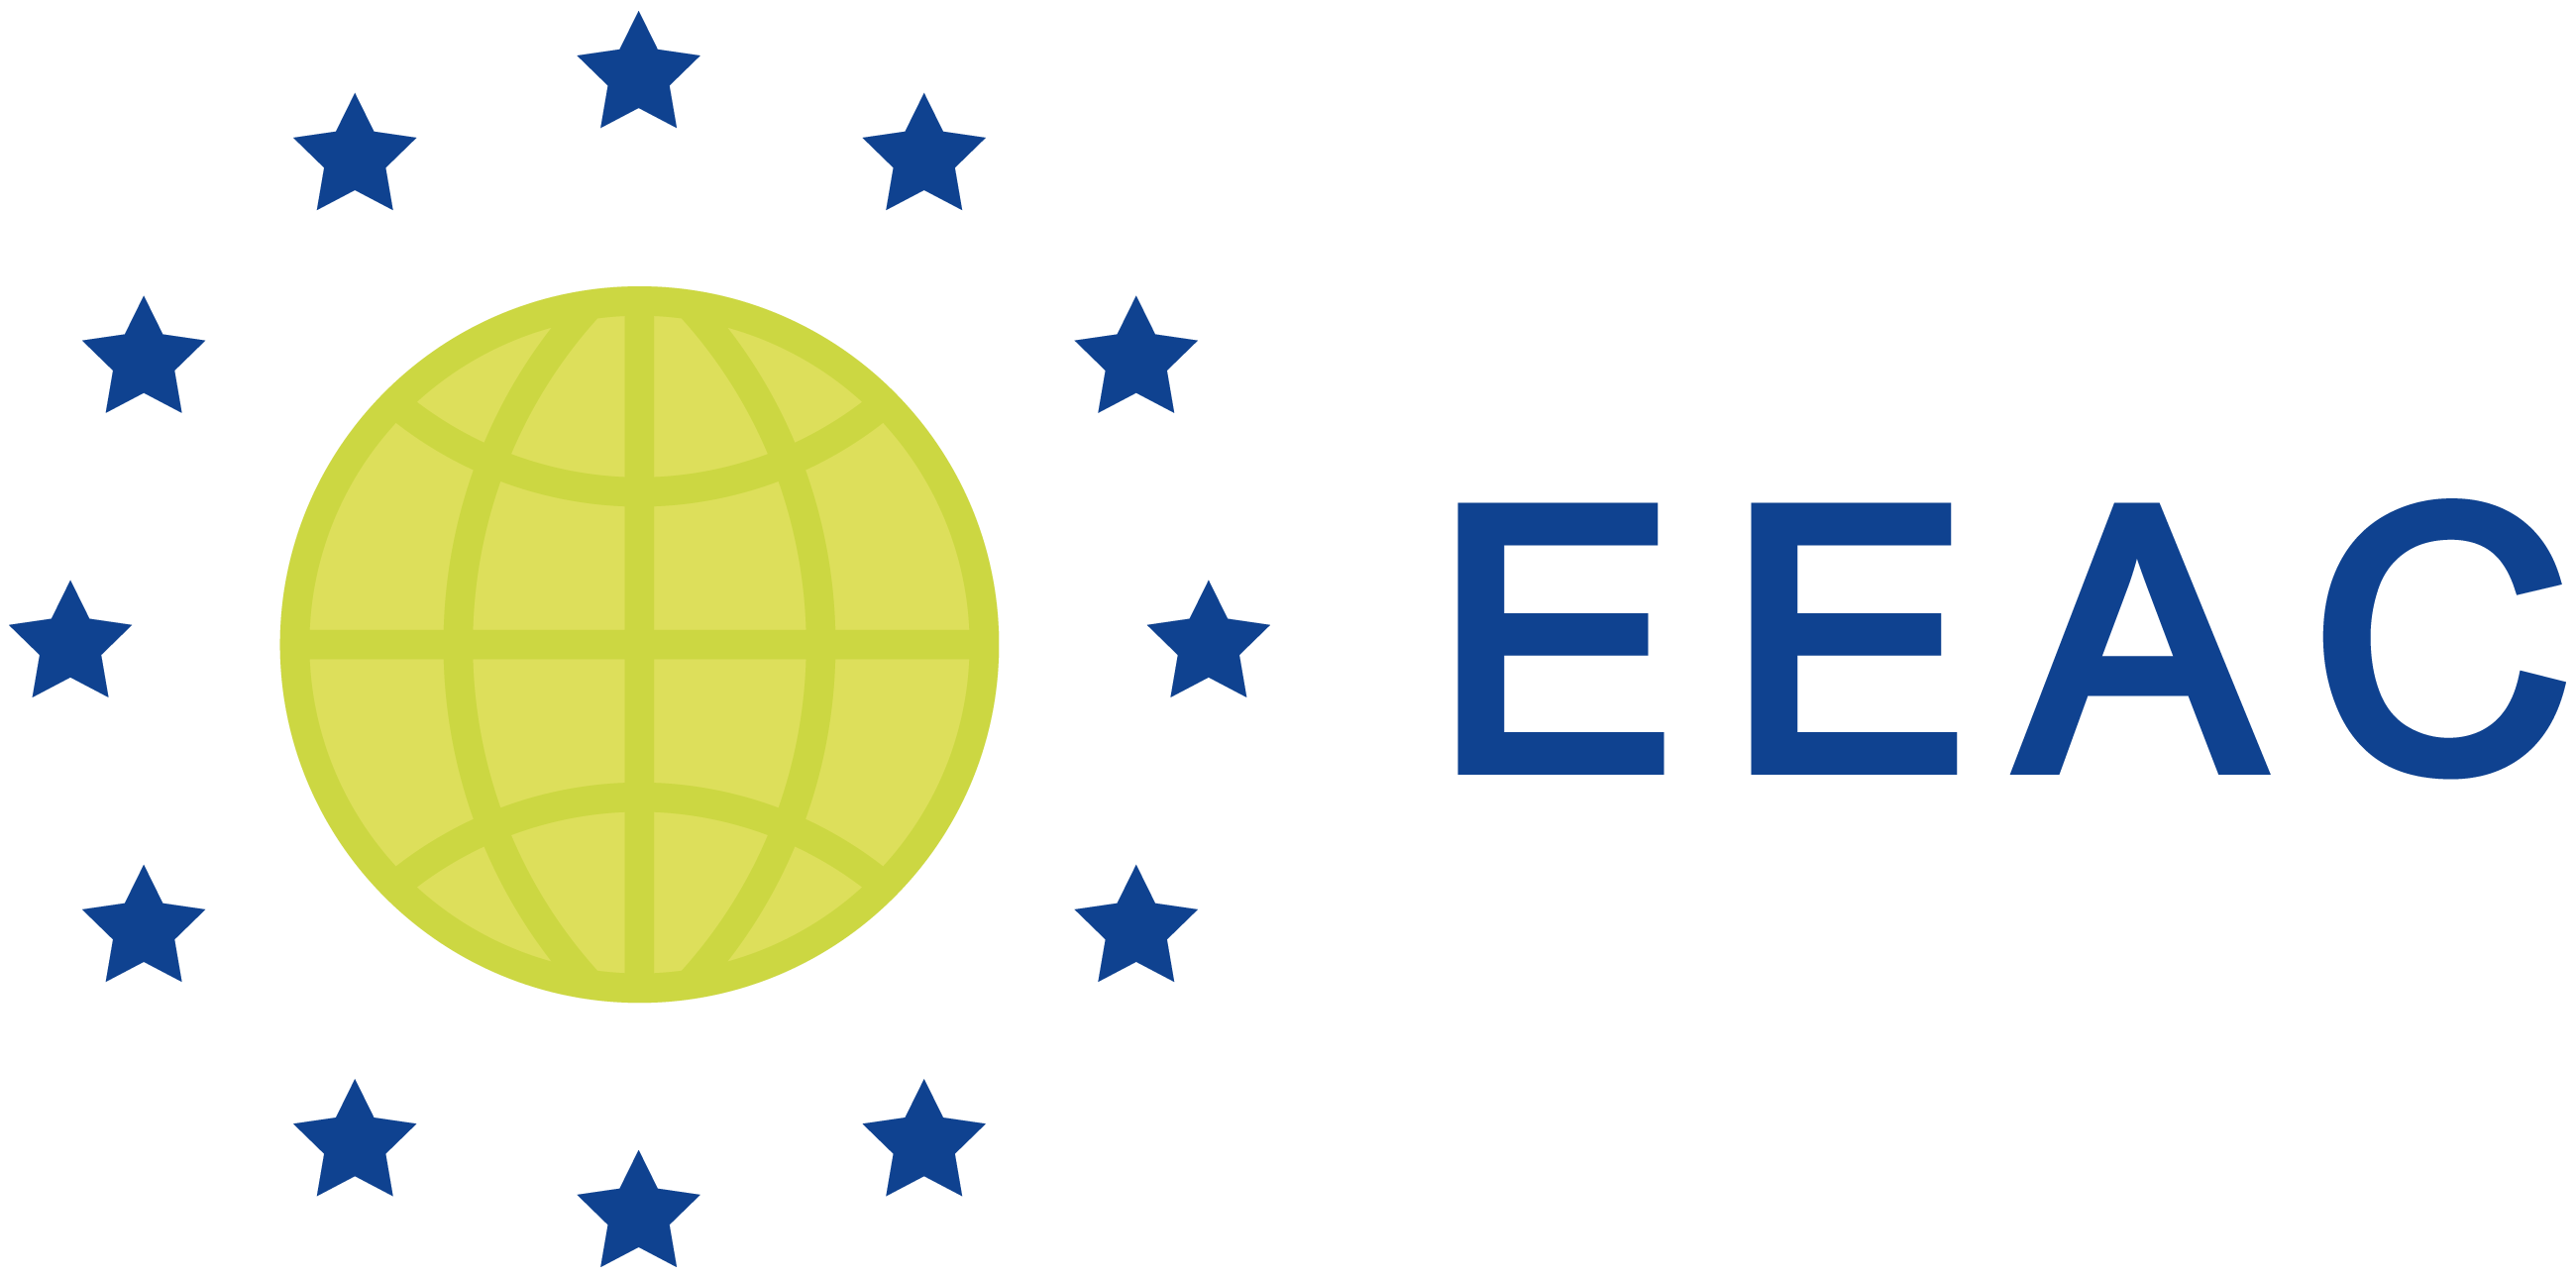 EEAC logo